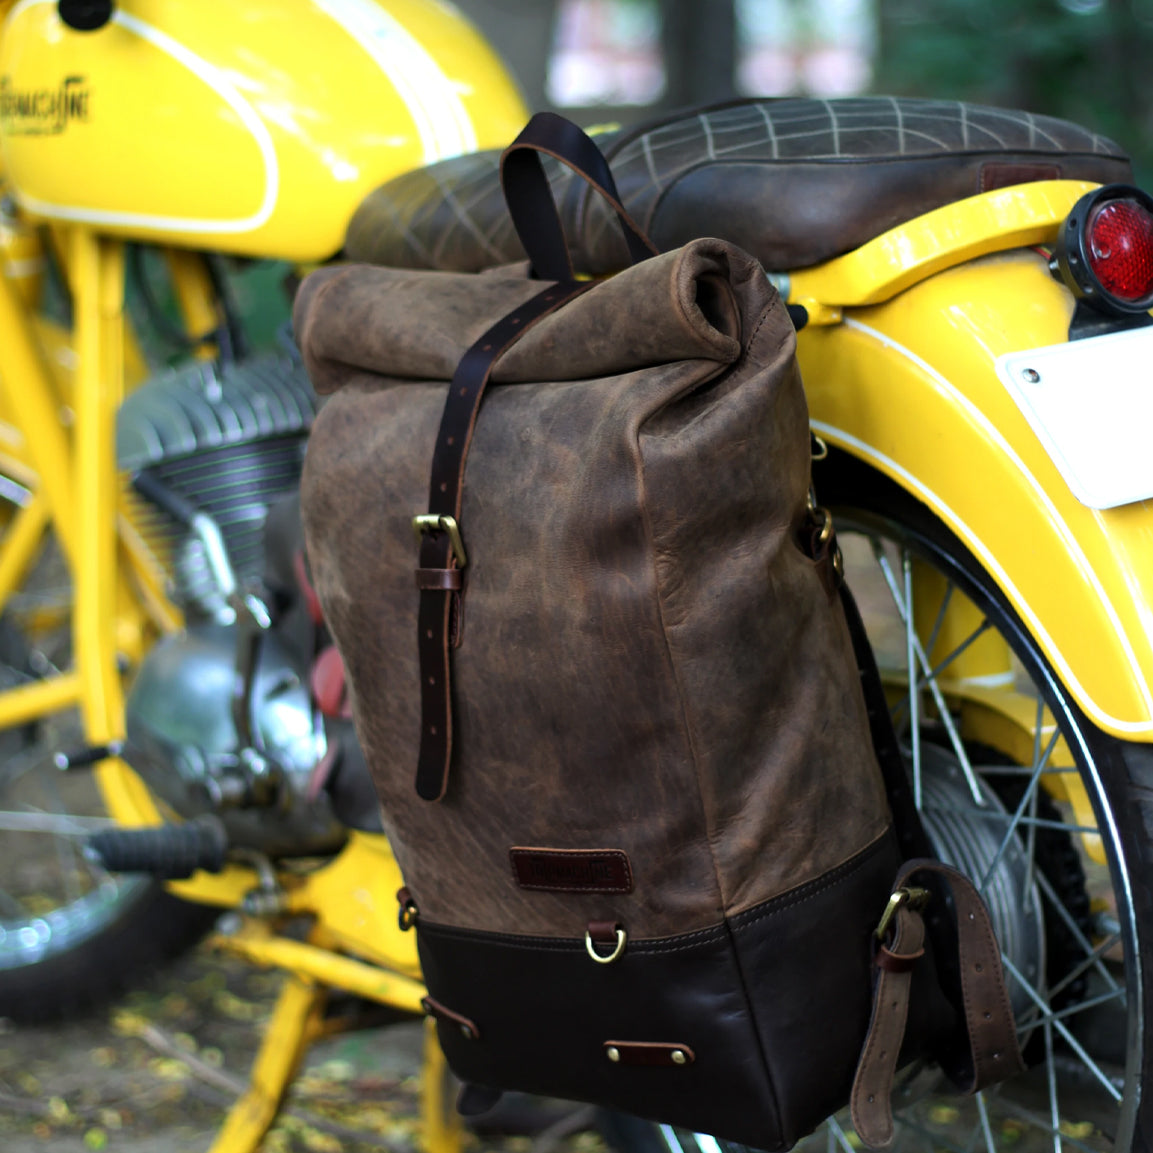 Trip Machine Backpack Pannier Classic - tobacco. Klassische Motorrad-Gepäcktasche aus dunkelbraunen Leder im Retro-/Vintage-Stil, mit 15 Liter Volumen perfekt für einen Mehr-Tages Ausflug. Einfaches Montagesystem an nahezu jedem Motorrad möglich.